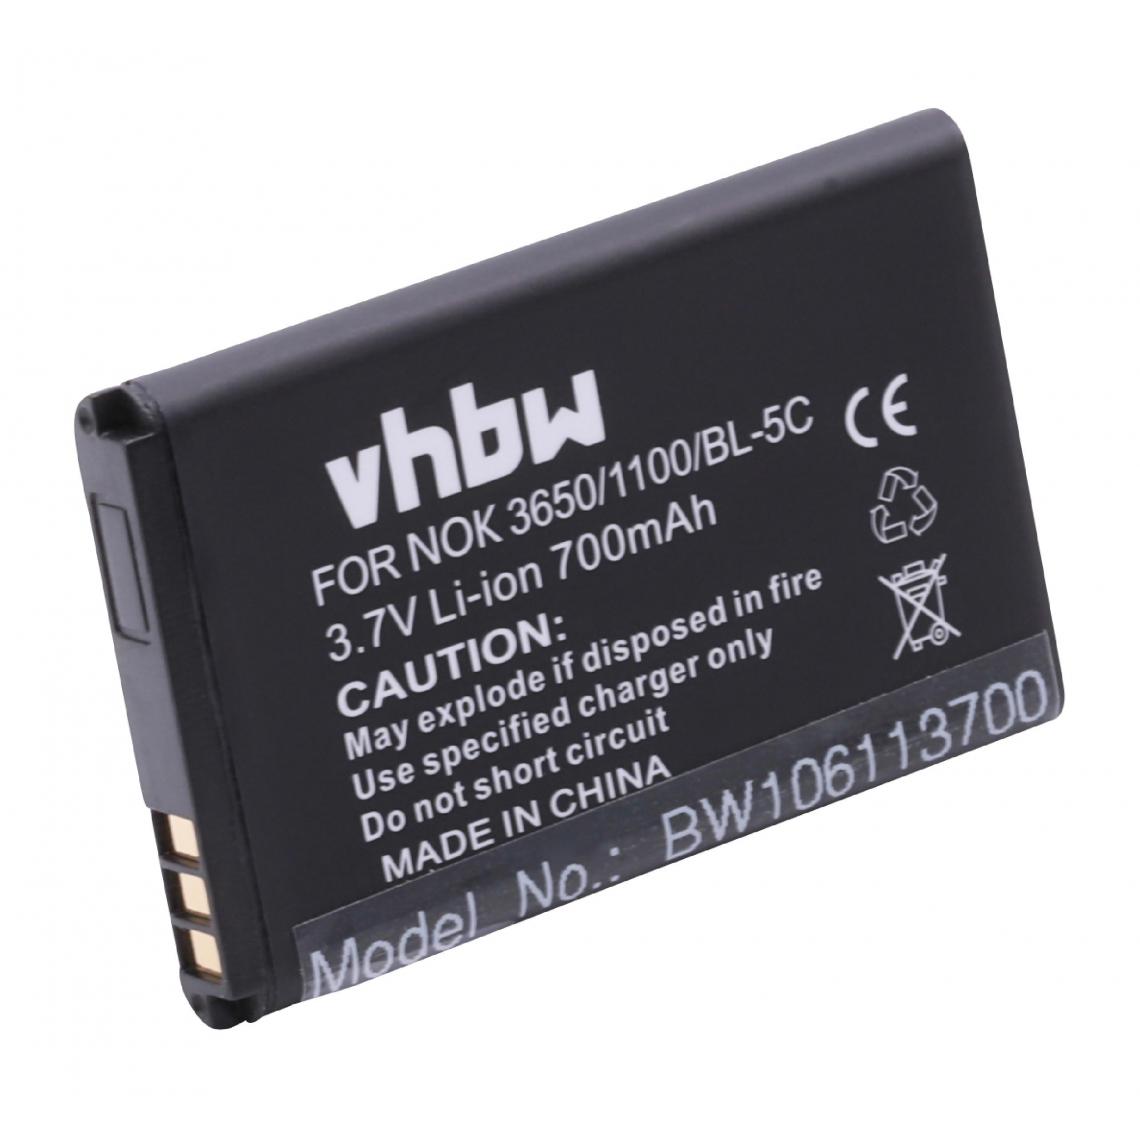 Vhbw - vhbw Batterie remplacement pour Alcatel 10000058, 3BN67332AA, RTR001F01 pour smartphone (700mAh, 3,7V, Li-ion) - Batterie téléphone